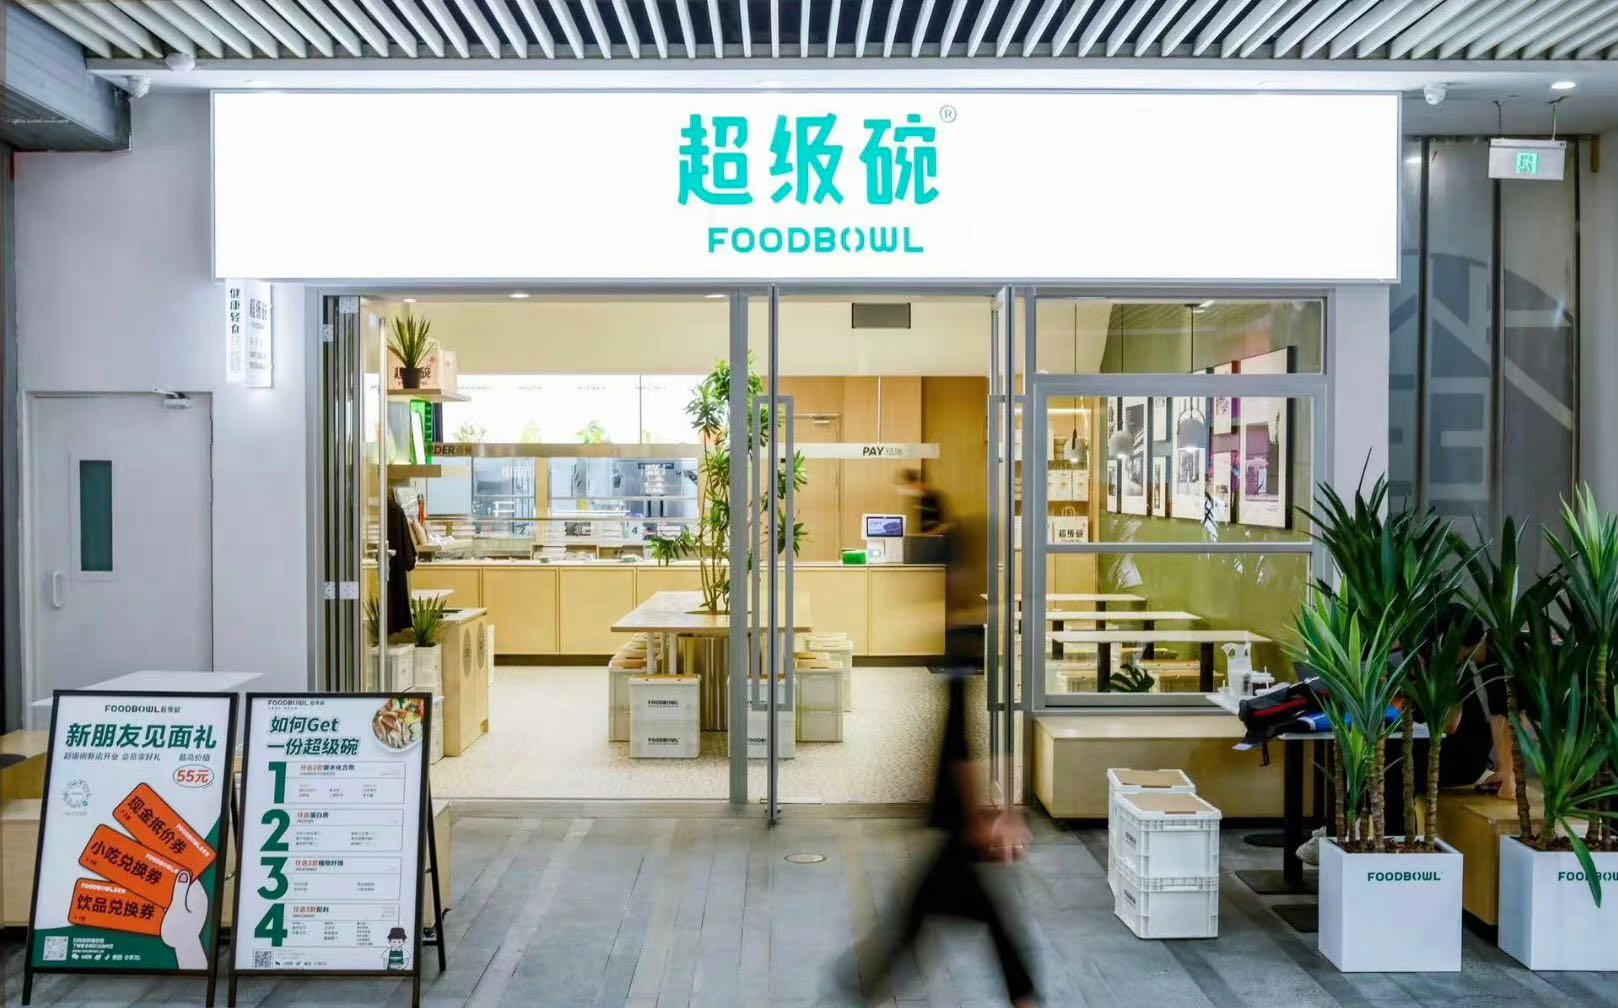 轻食品牌「FOODBOWL超级碗」在上海开业首店